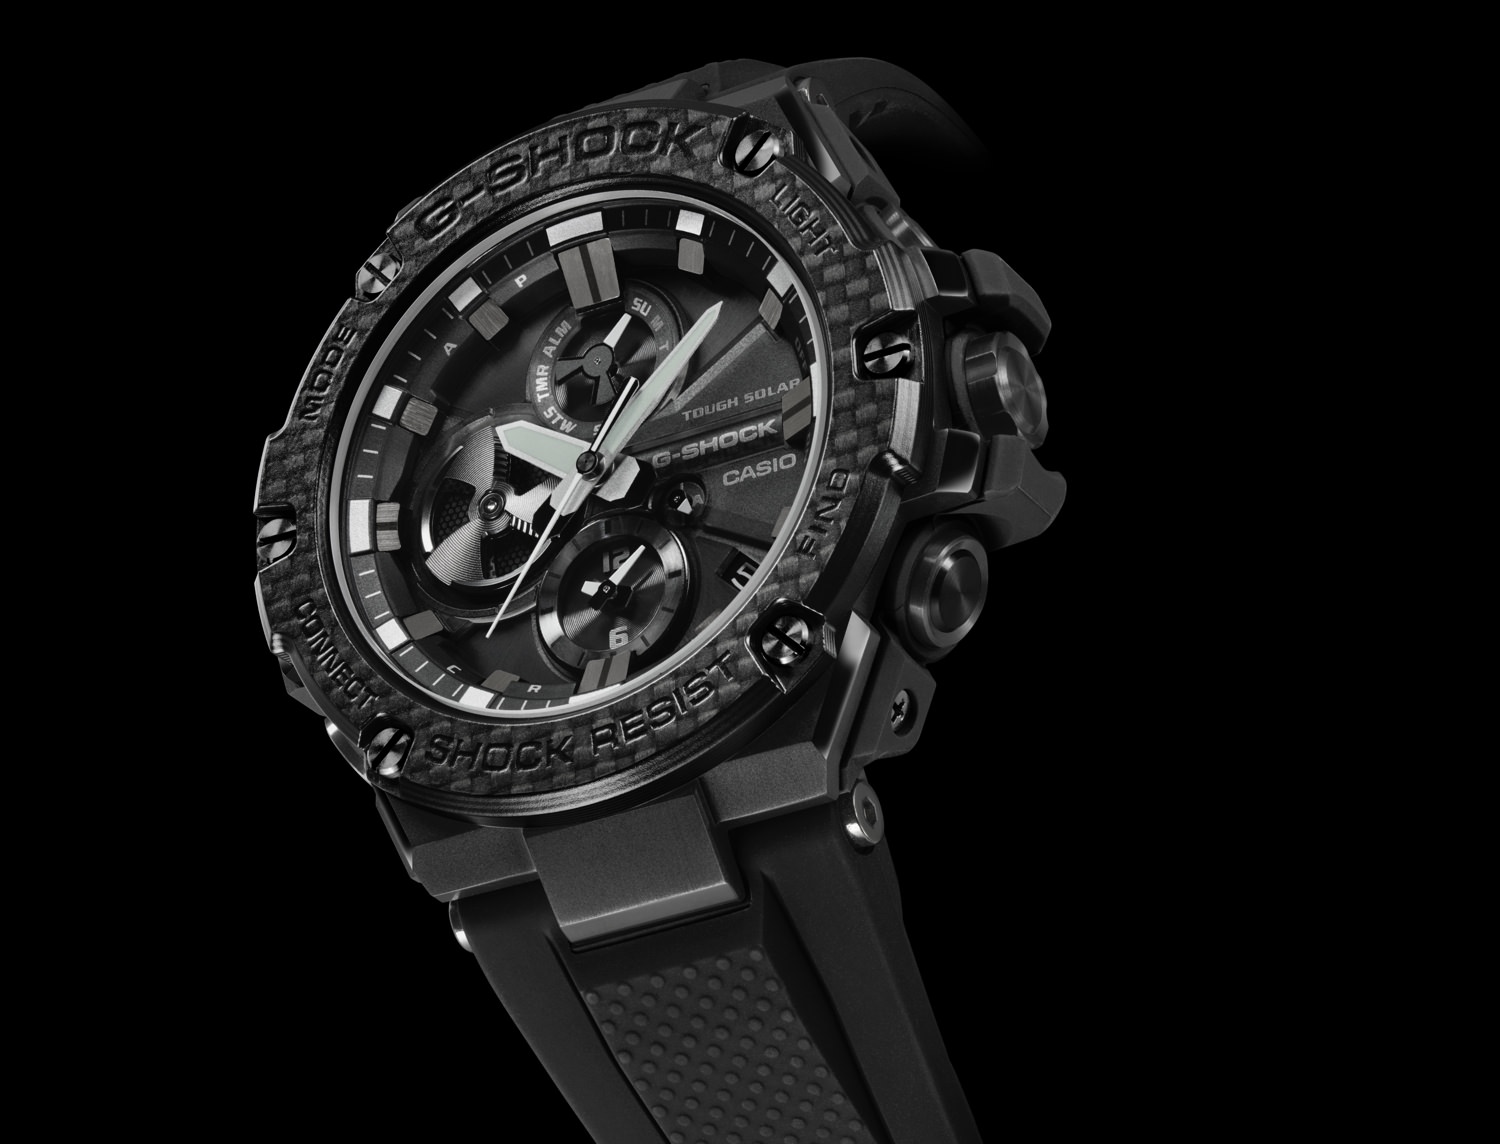 The G-SHOCK G-STEEL GSTB100X-1A timepiece